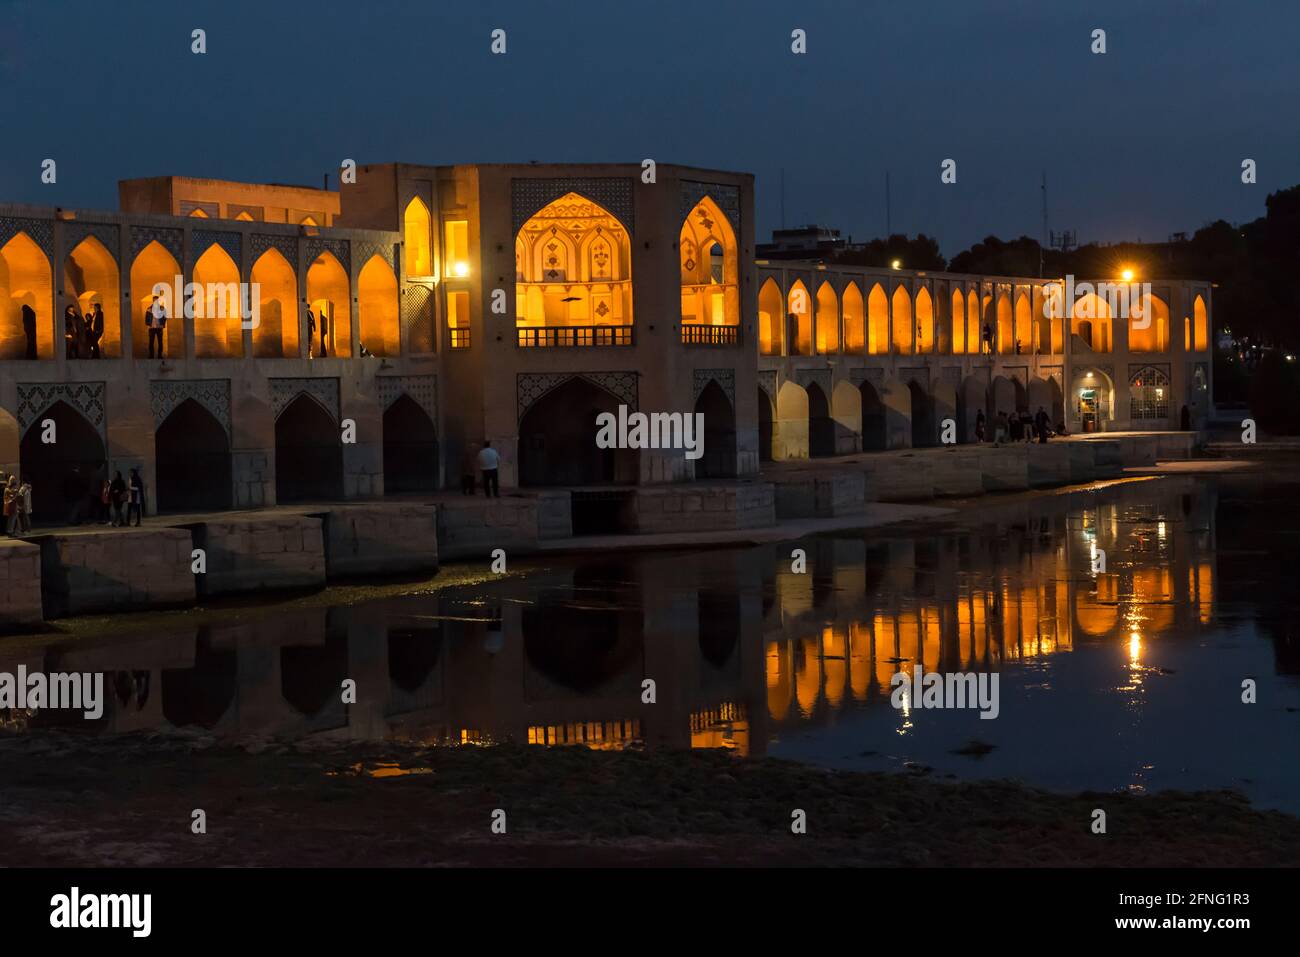 Le pont historique de Khaju au-dessus de la rivière Zayanderud illuminé pour la nuit. Ispahan, Iran Banque D'Images